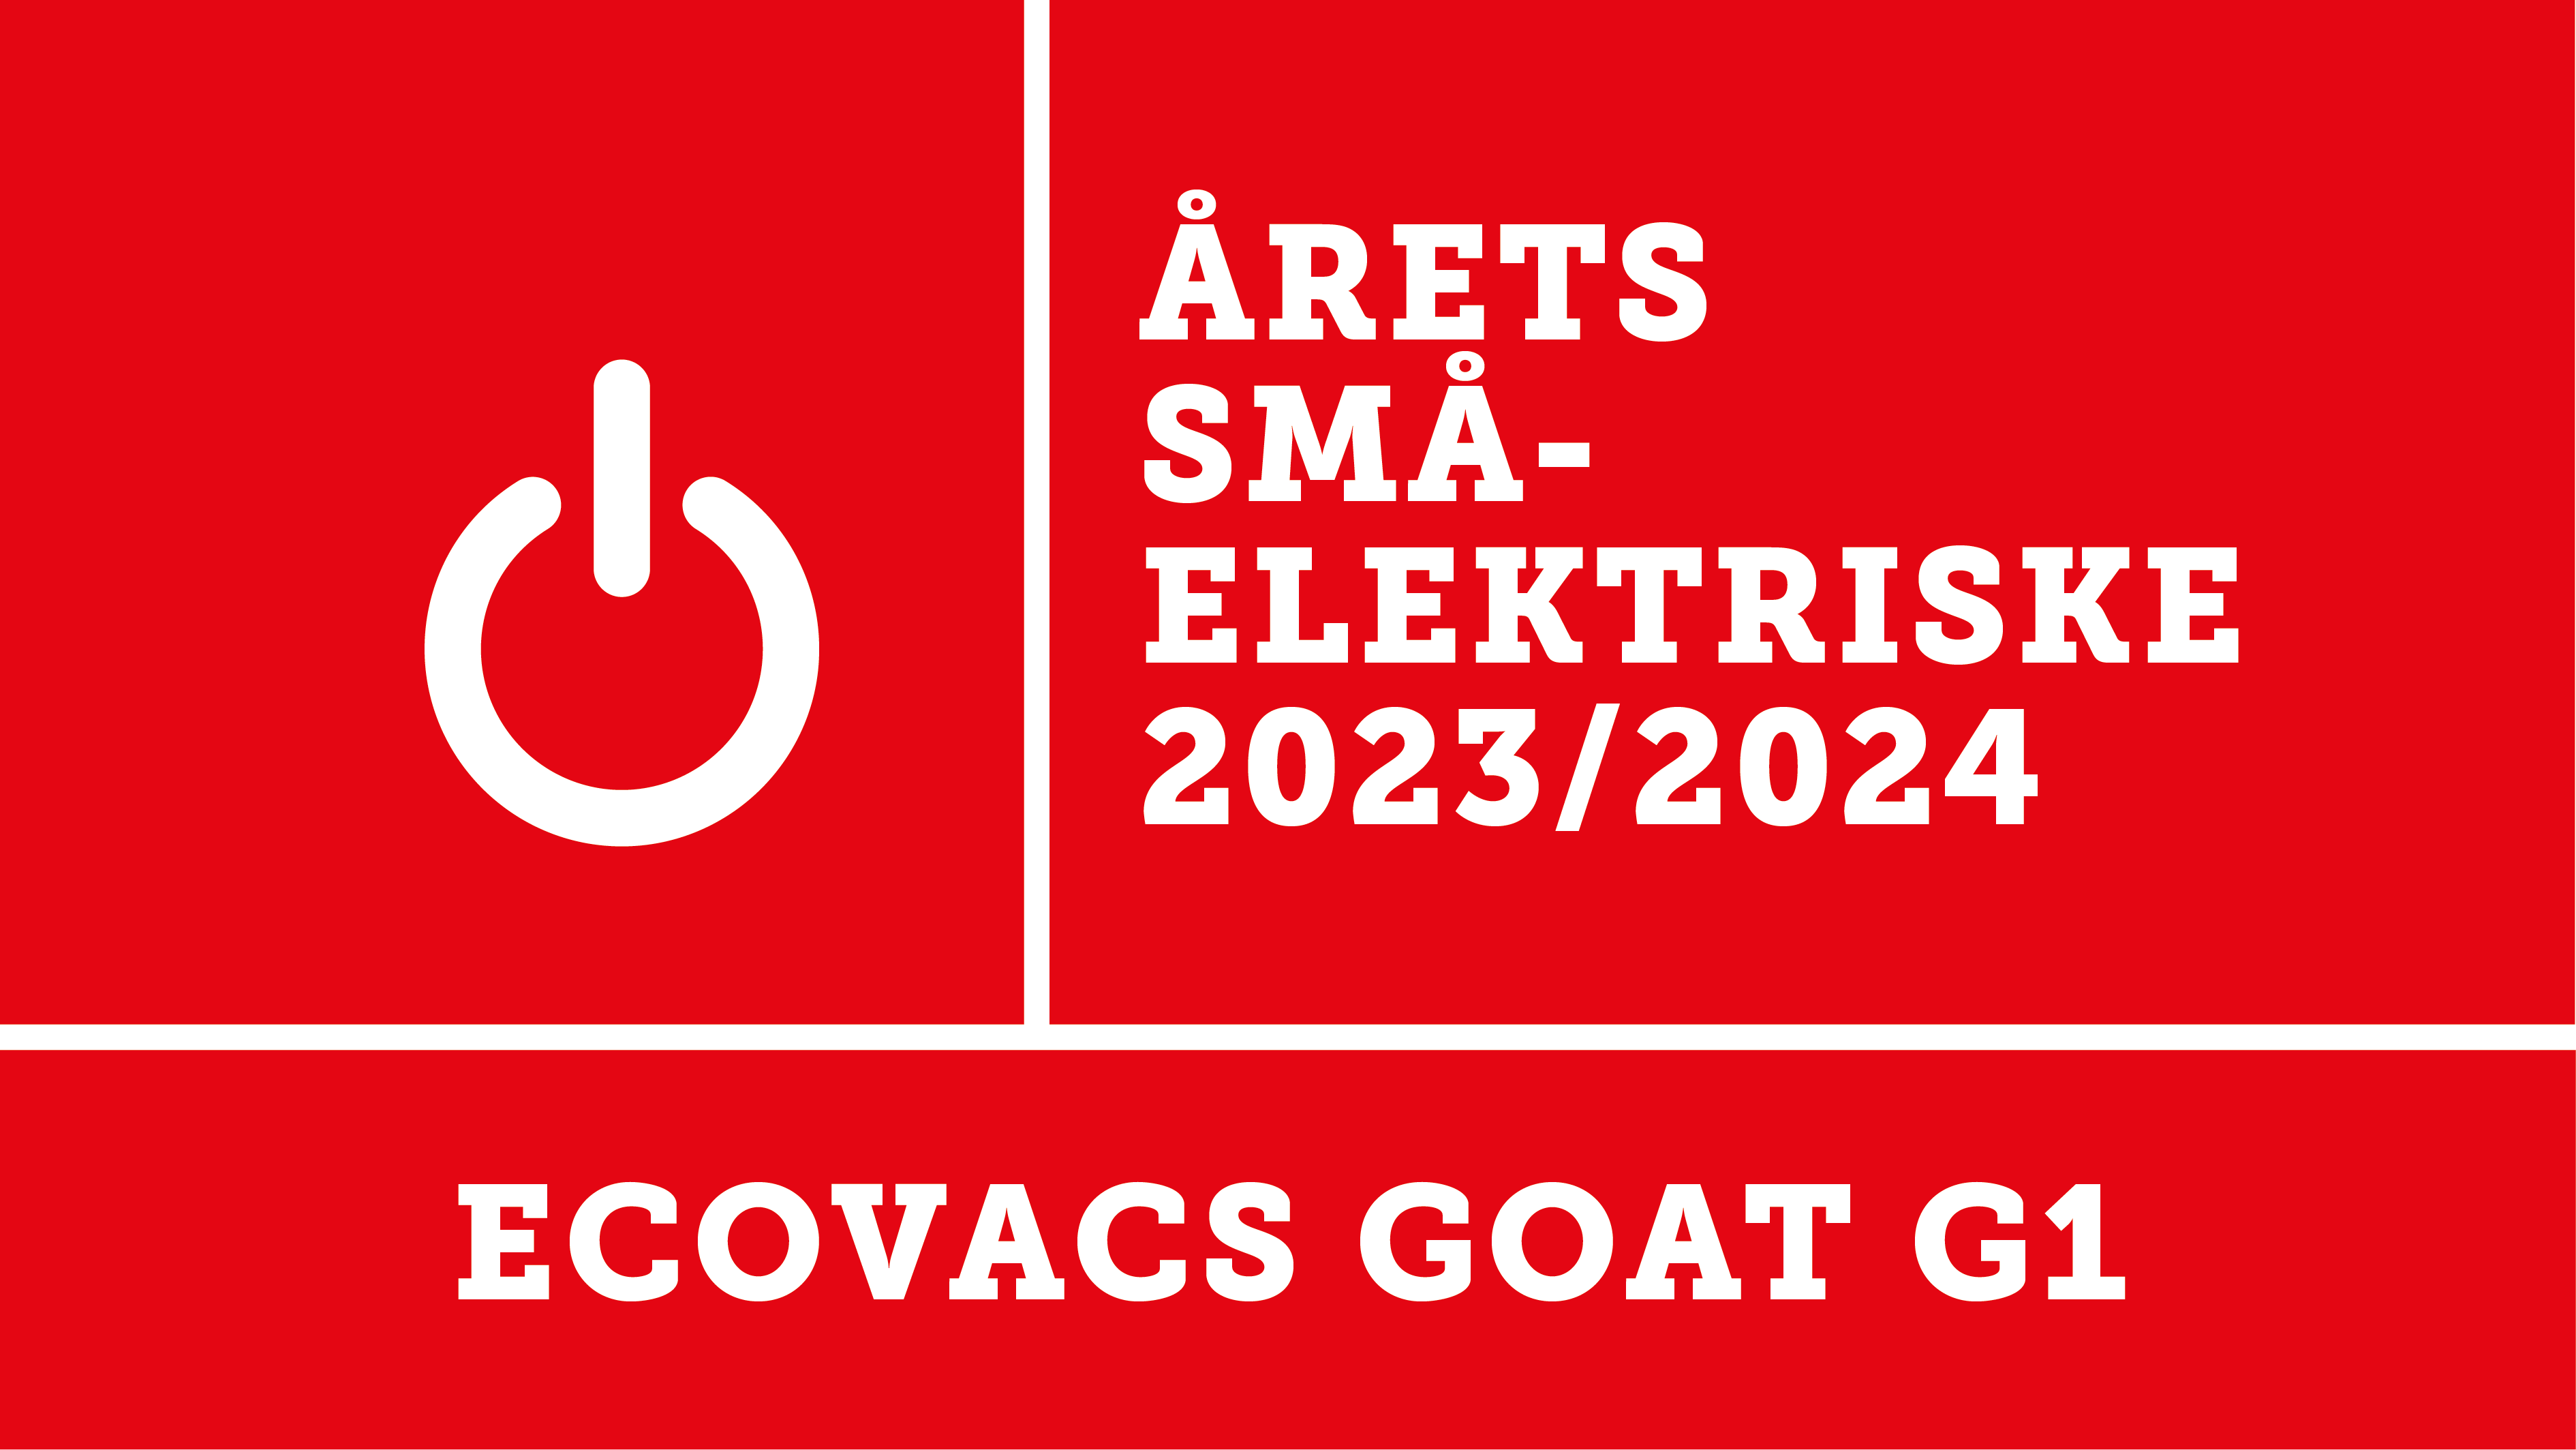 Robotgressklipperen Ecovacs Goat er kåret til årets småelektriske 2023/2024 av Elektronikkbransjen. 